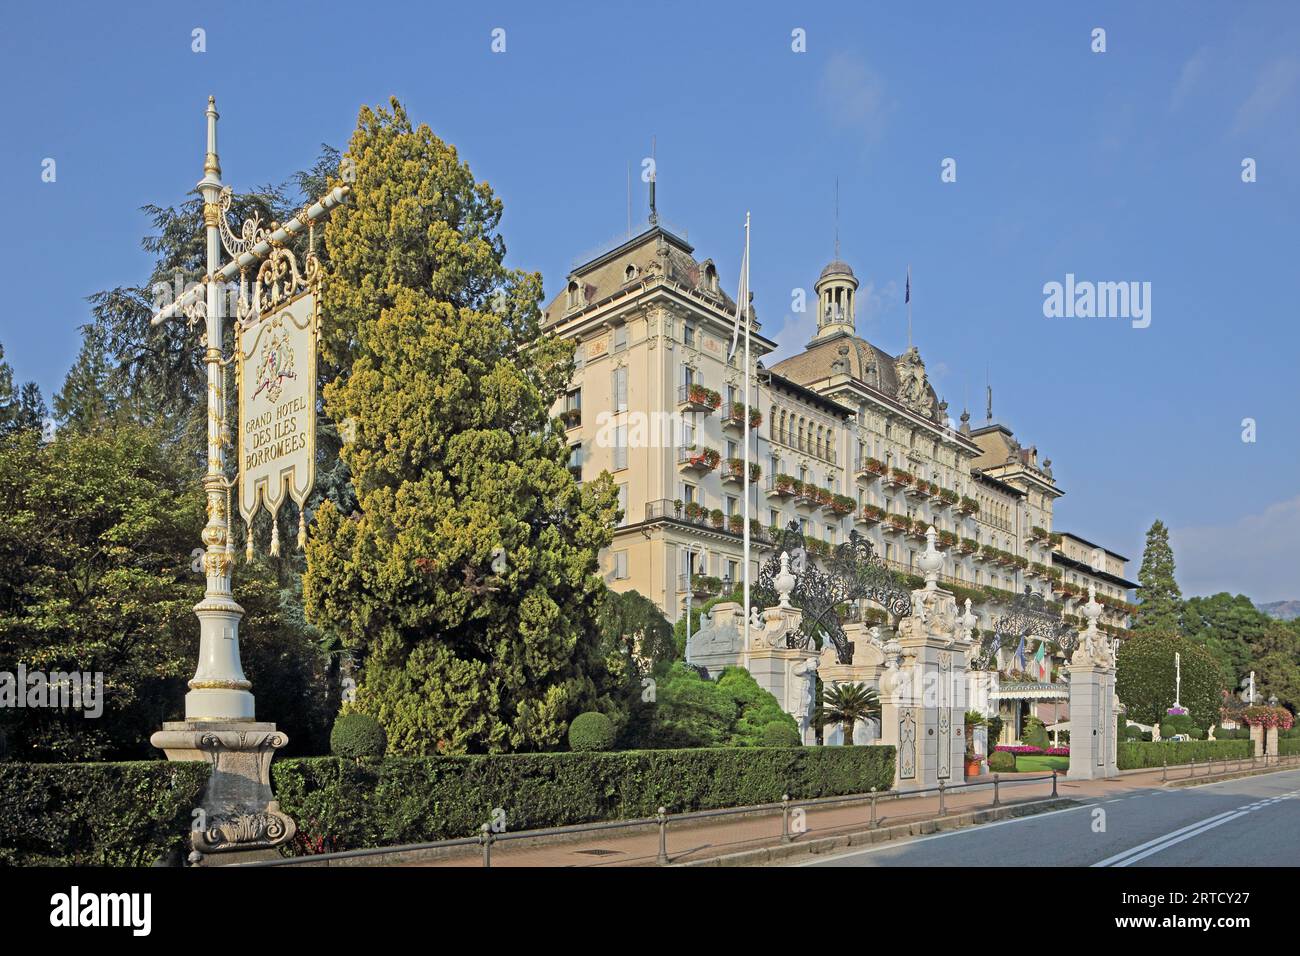 Grand Hotel des Iles Borromees, Stresa, Lake Maggiore, Piedmont, Italy Stock Photo